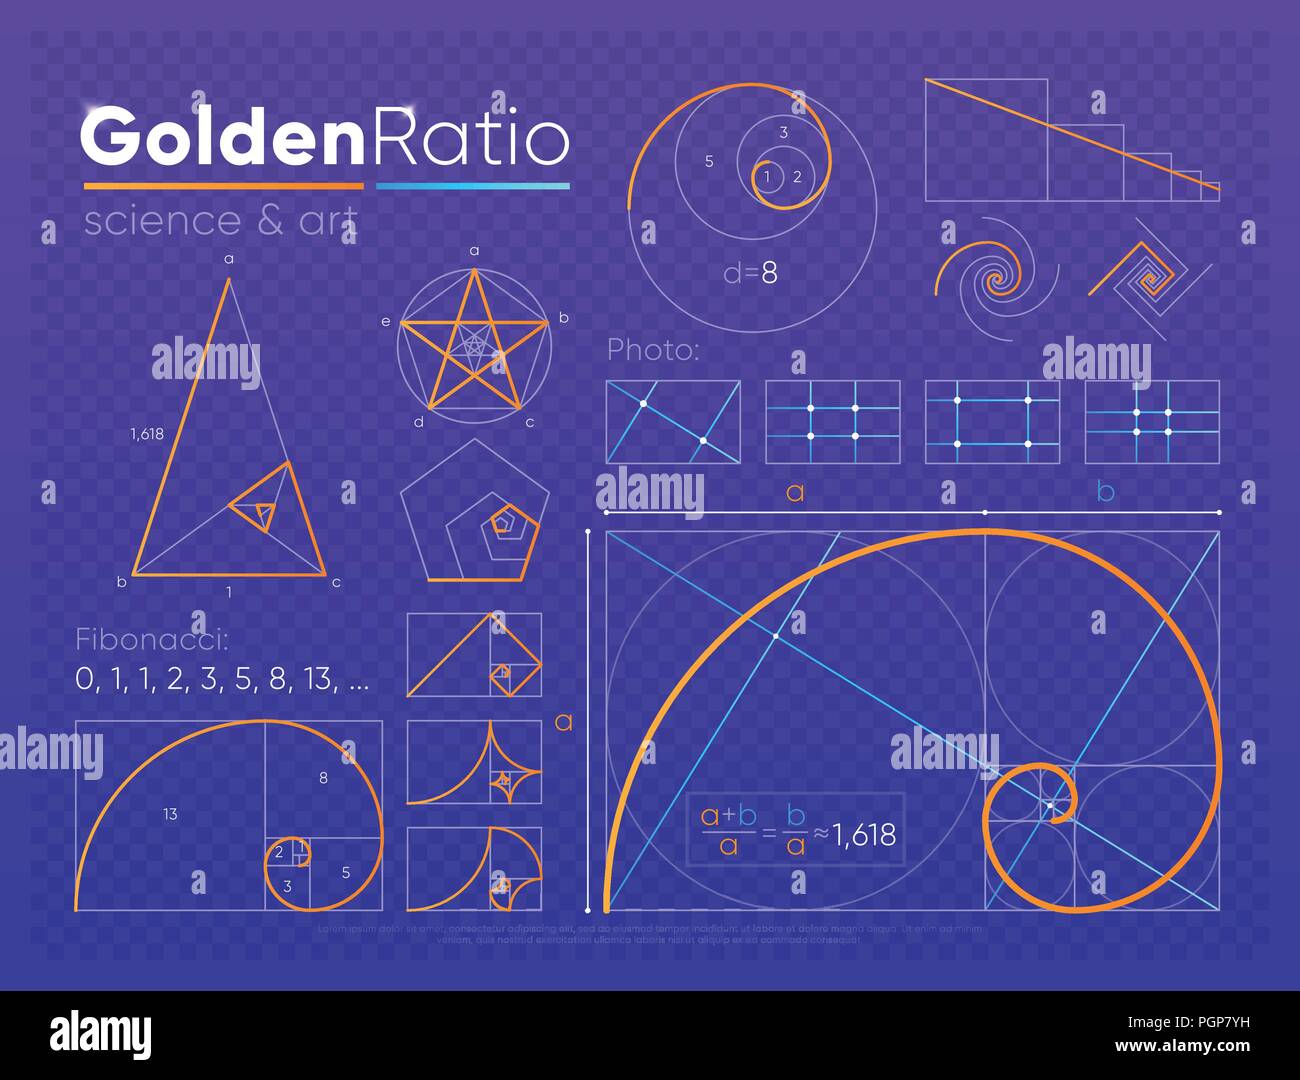 Der goldene Schnitt element Stock-Vektorgrafik - Alamy